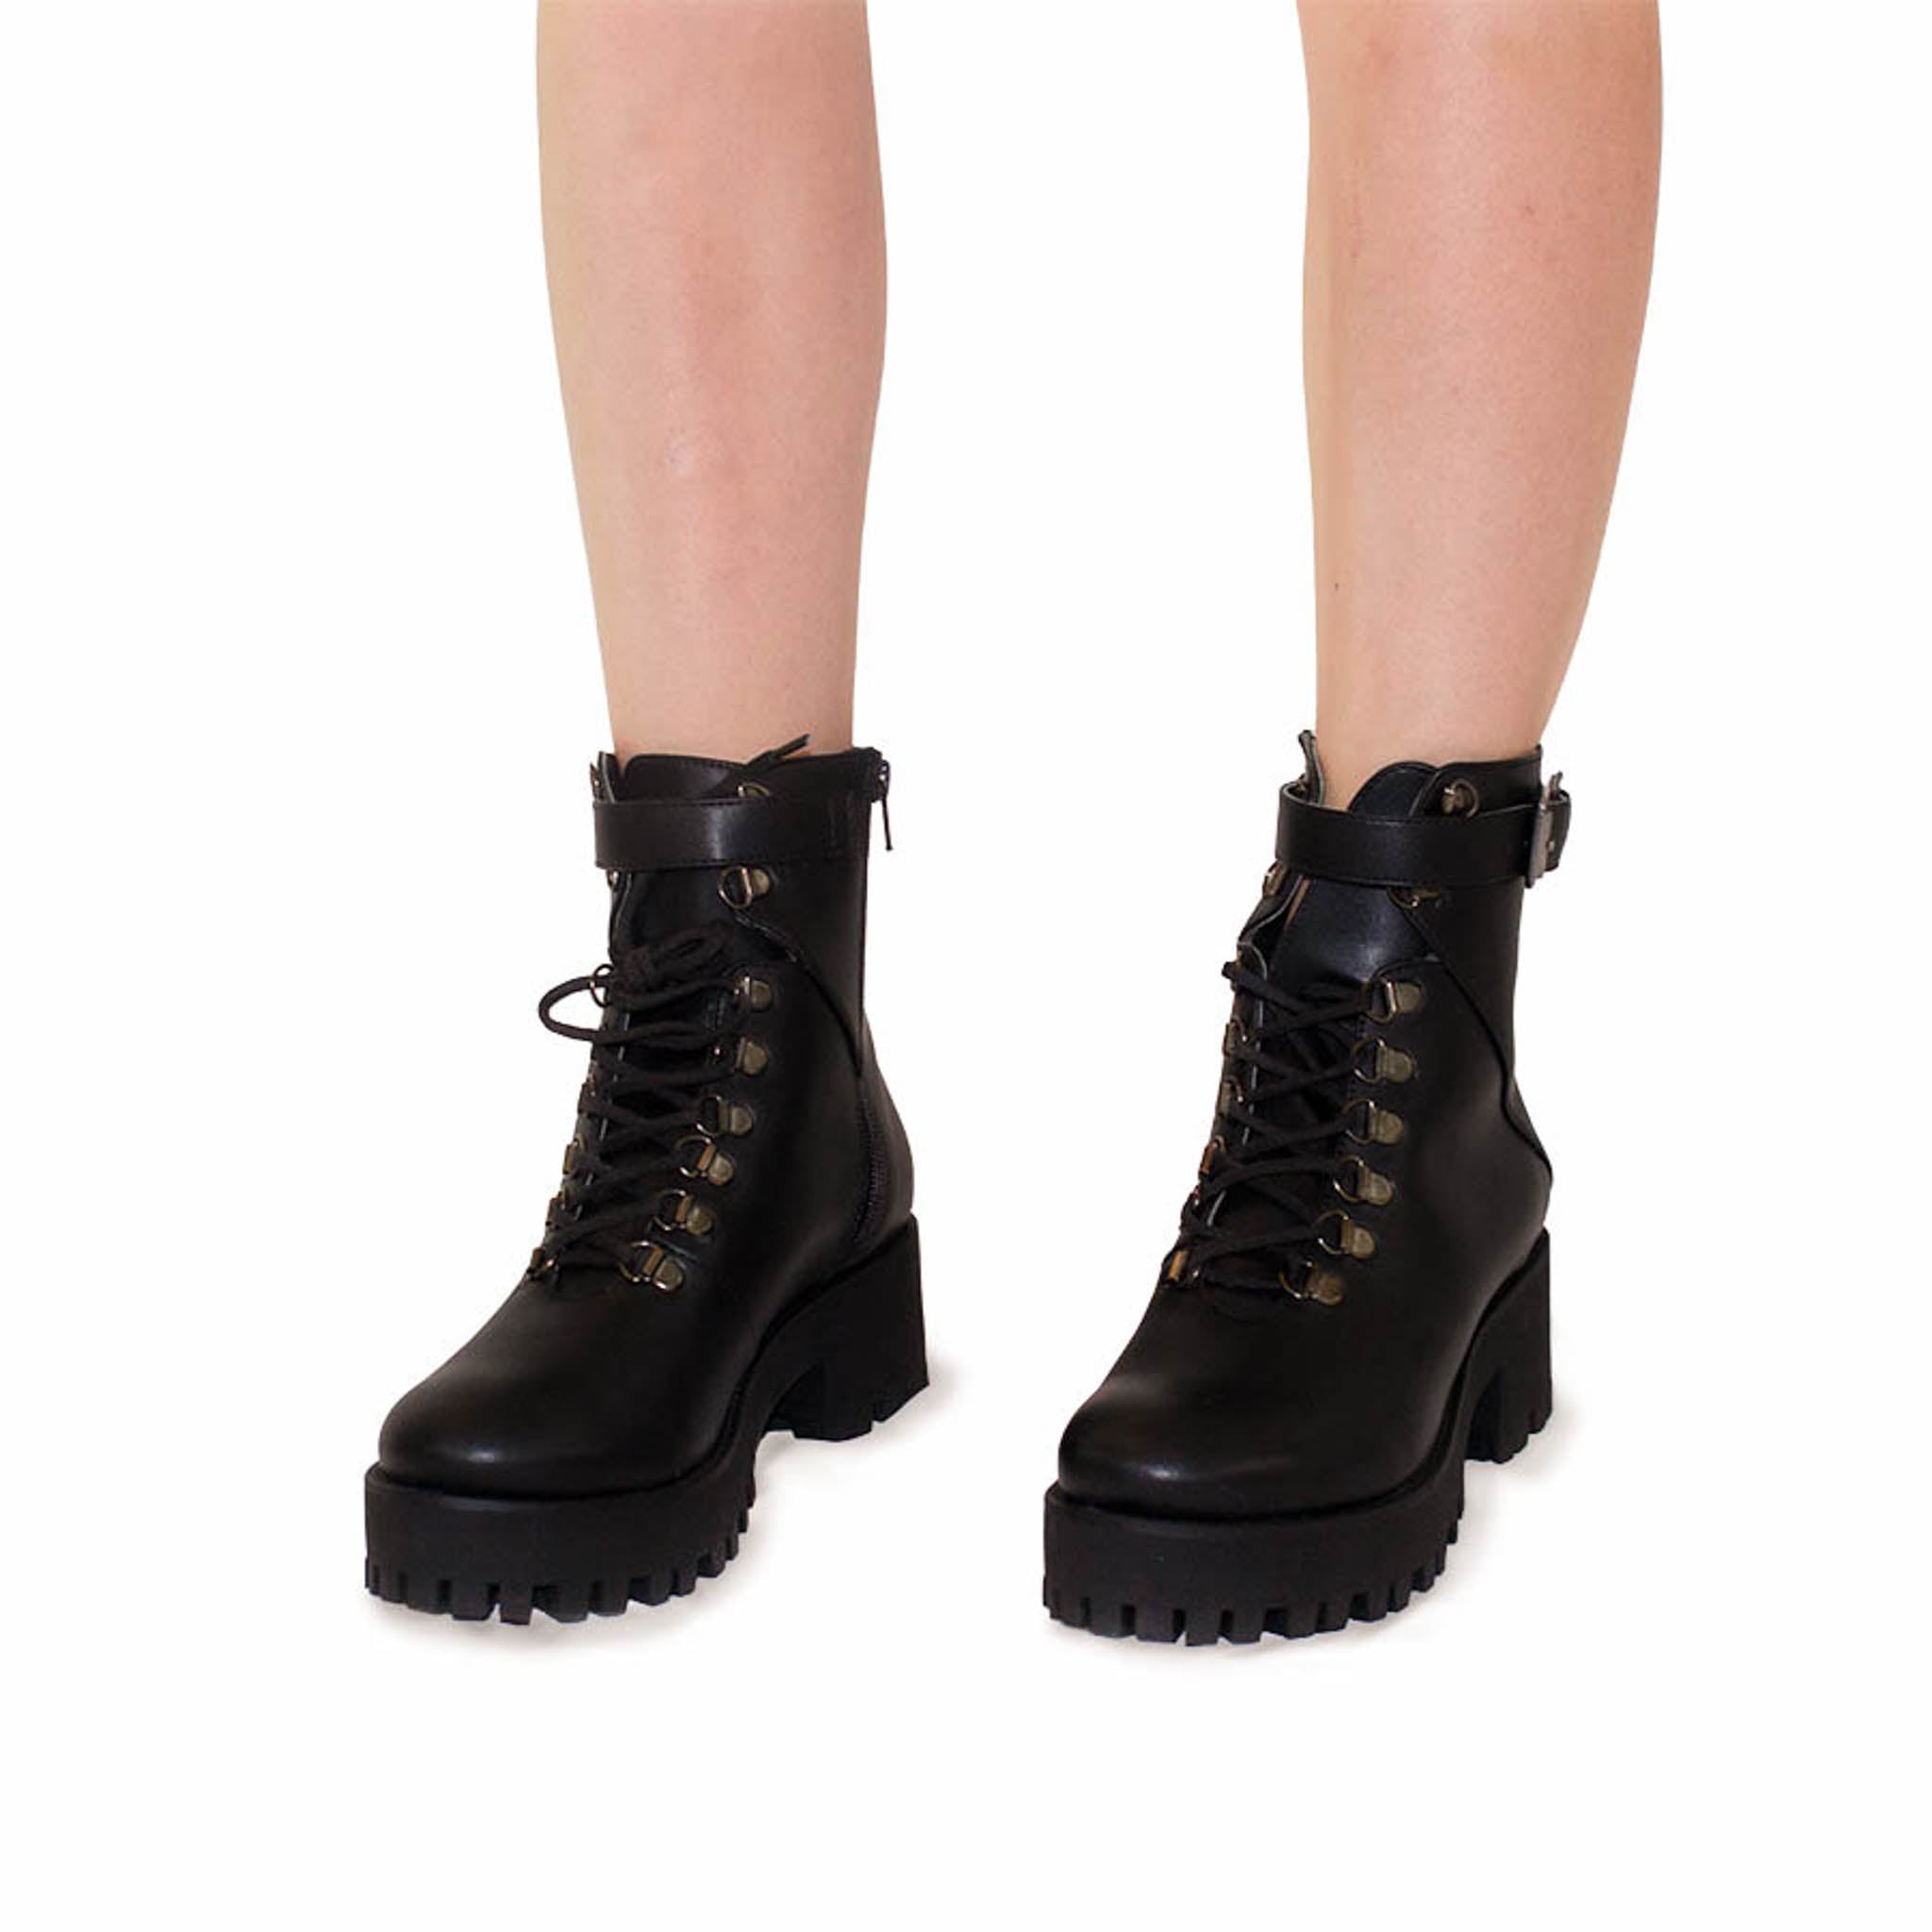 evidencia rock Contratado Botas Naimakka - Botas de combate o combat boots negras – boh shoes